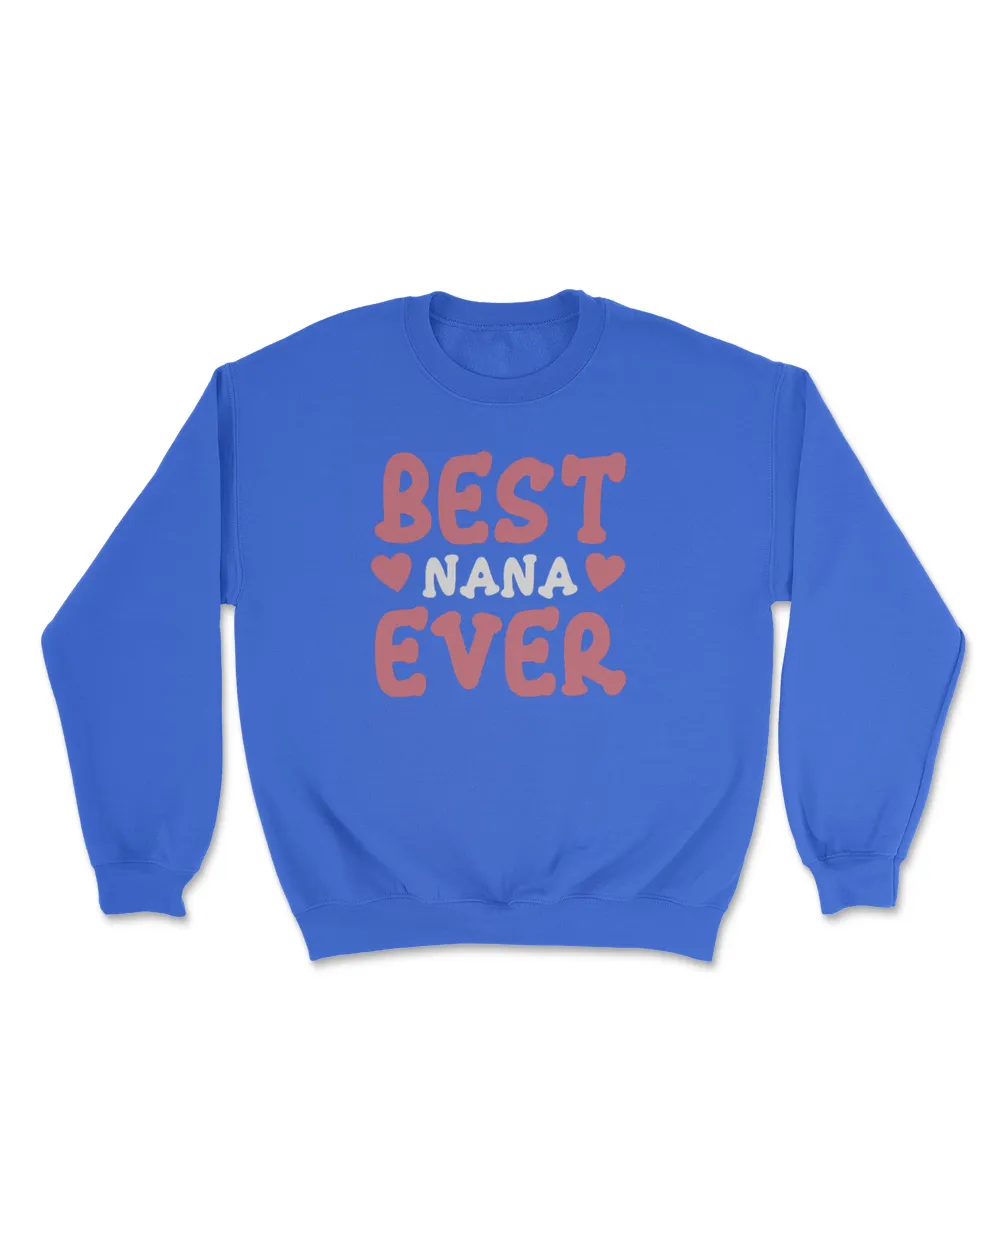 Best nana ever t shirt